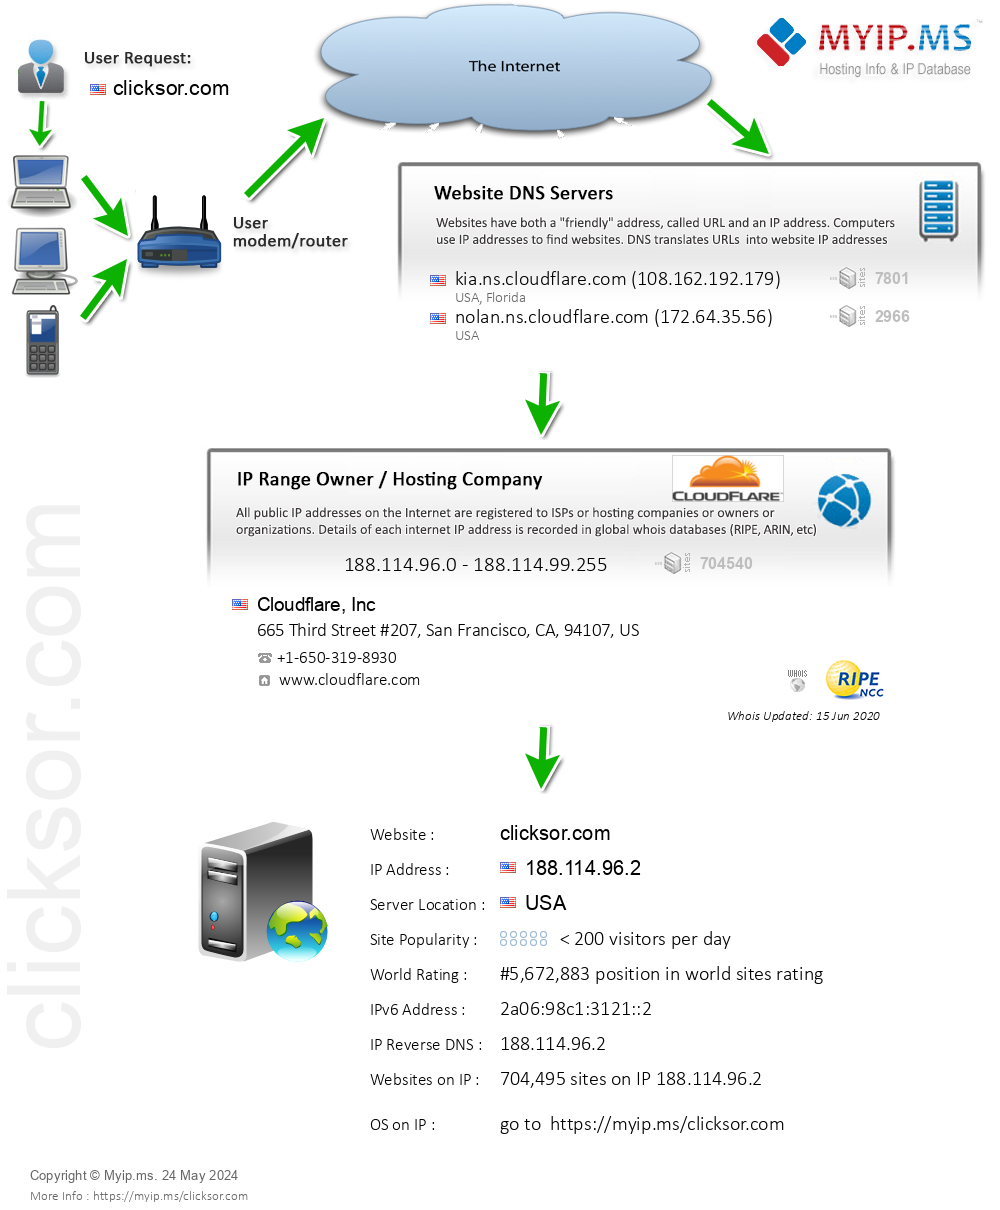 Clicksor.com - Website Hosting Visual IP Diagram